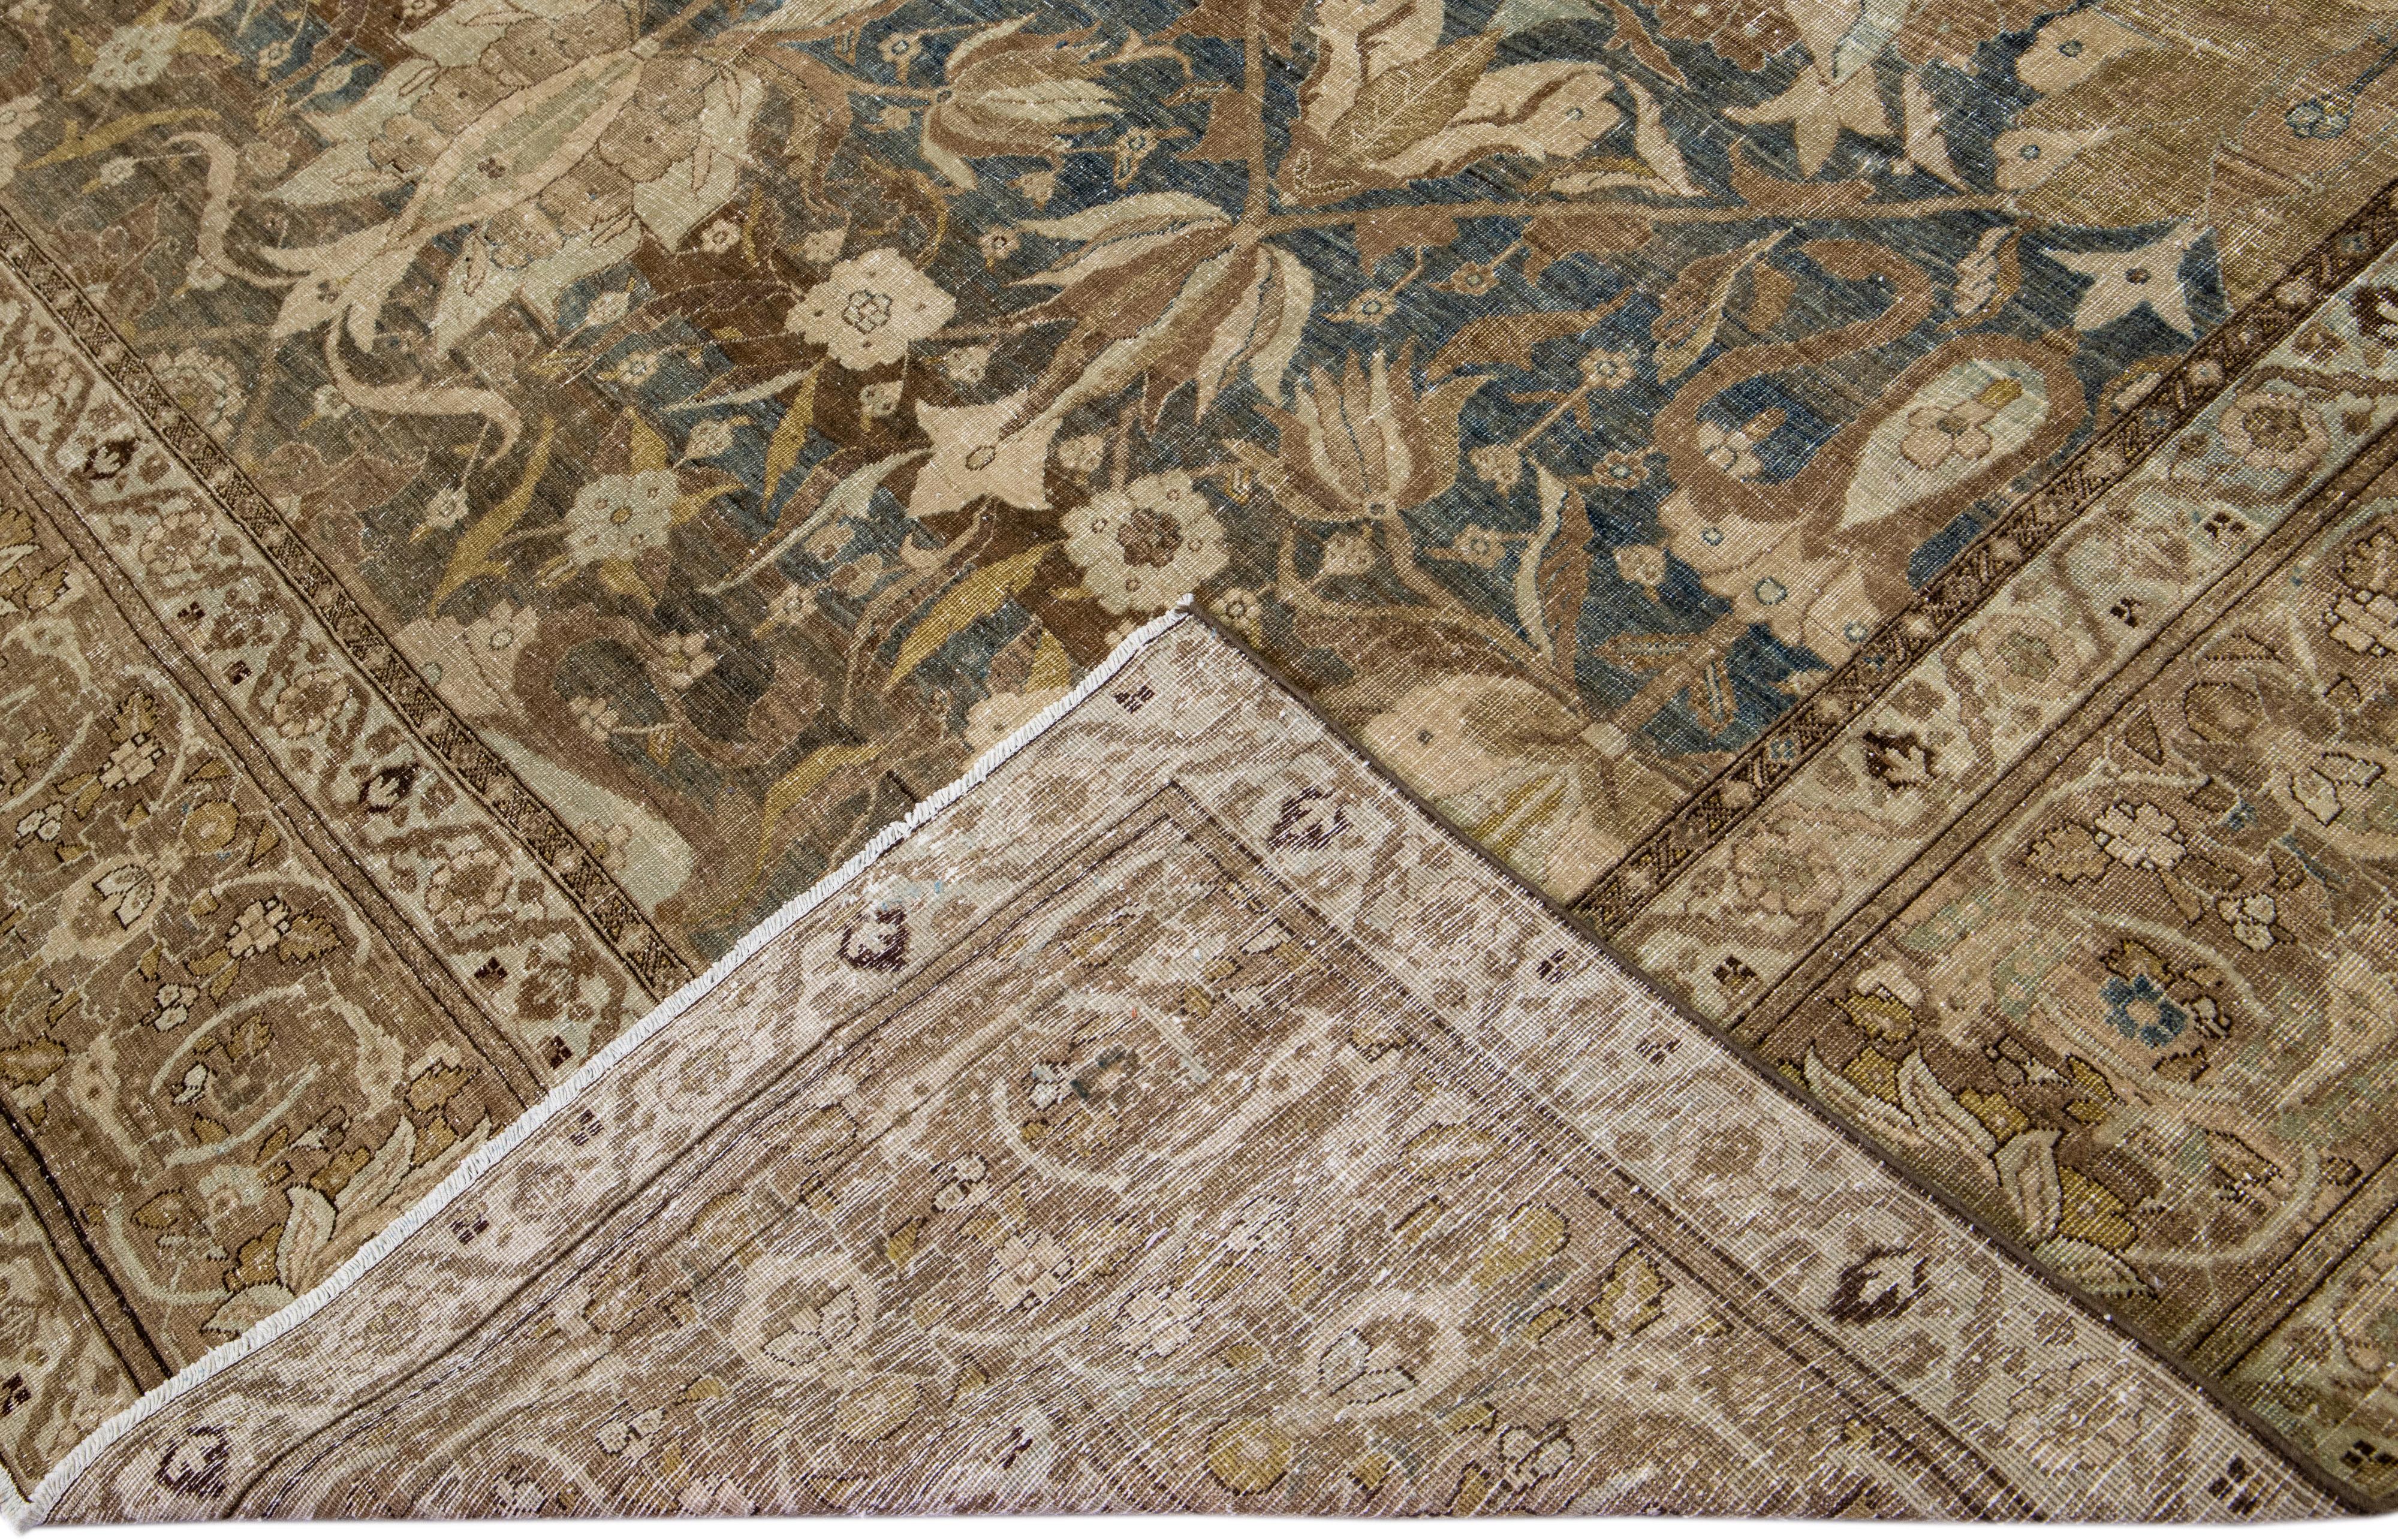 Schöner antiker Heriz Serapi handgeknüpfter Wollteppich mit blauem und braunem Feld. Dieser Heriz-Teppich hat einen entworfenen Rahmen und mehrfarbige Akzente in einem wunderschönen Allover-Blumenmuster.

Dieser Teppich misst: 11'2 Zoll